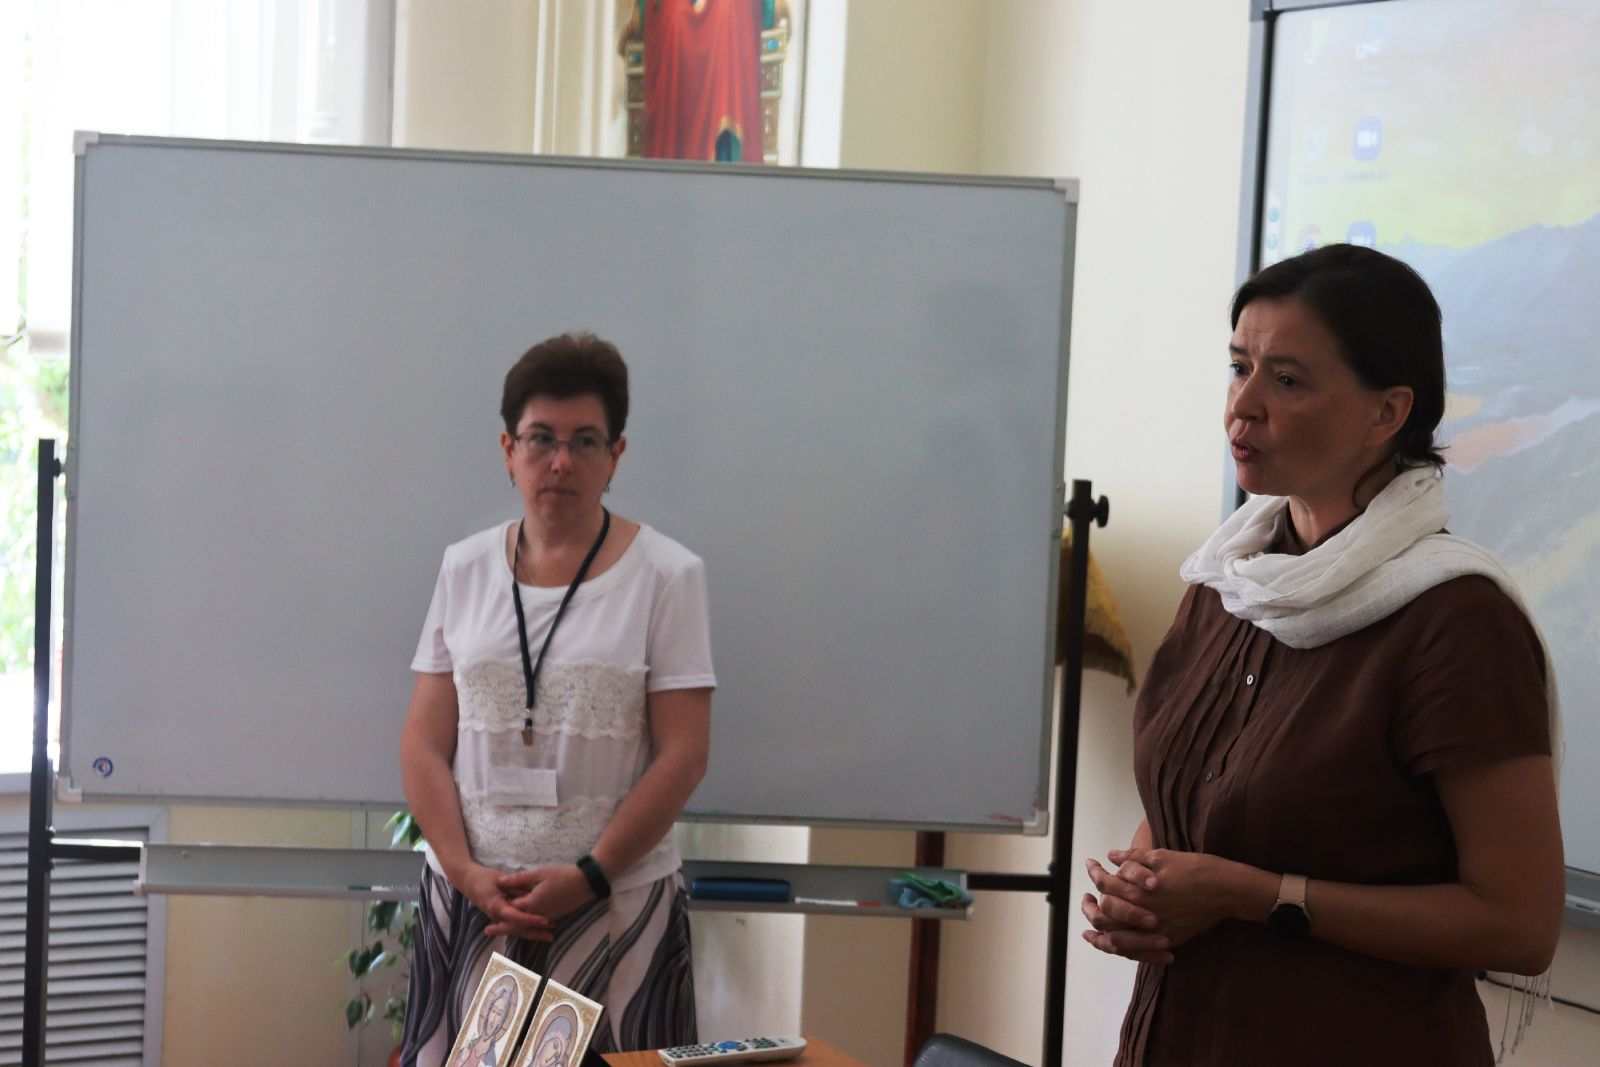 Татьяна Зальцман (на фото слева) и Вероника Леонтьева (на фото справа) проводят семинар во Владивостокской епархии. Фото: официальный сайт Владивостокской епархии 